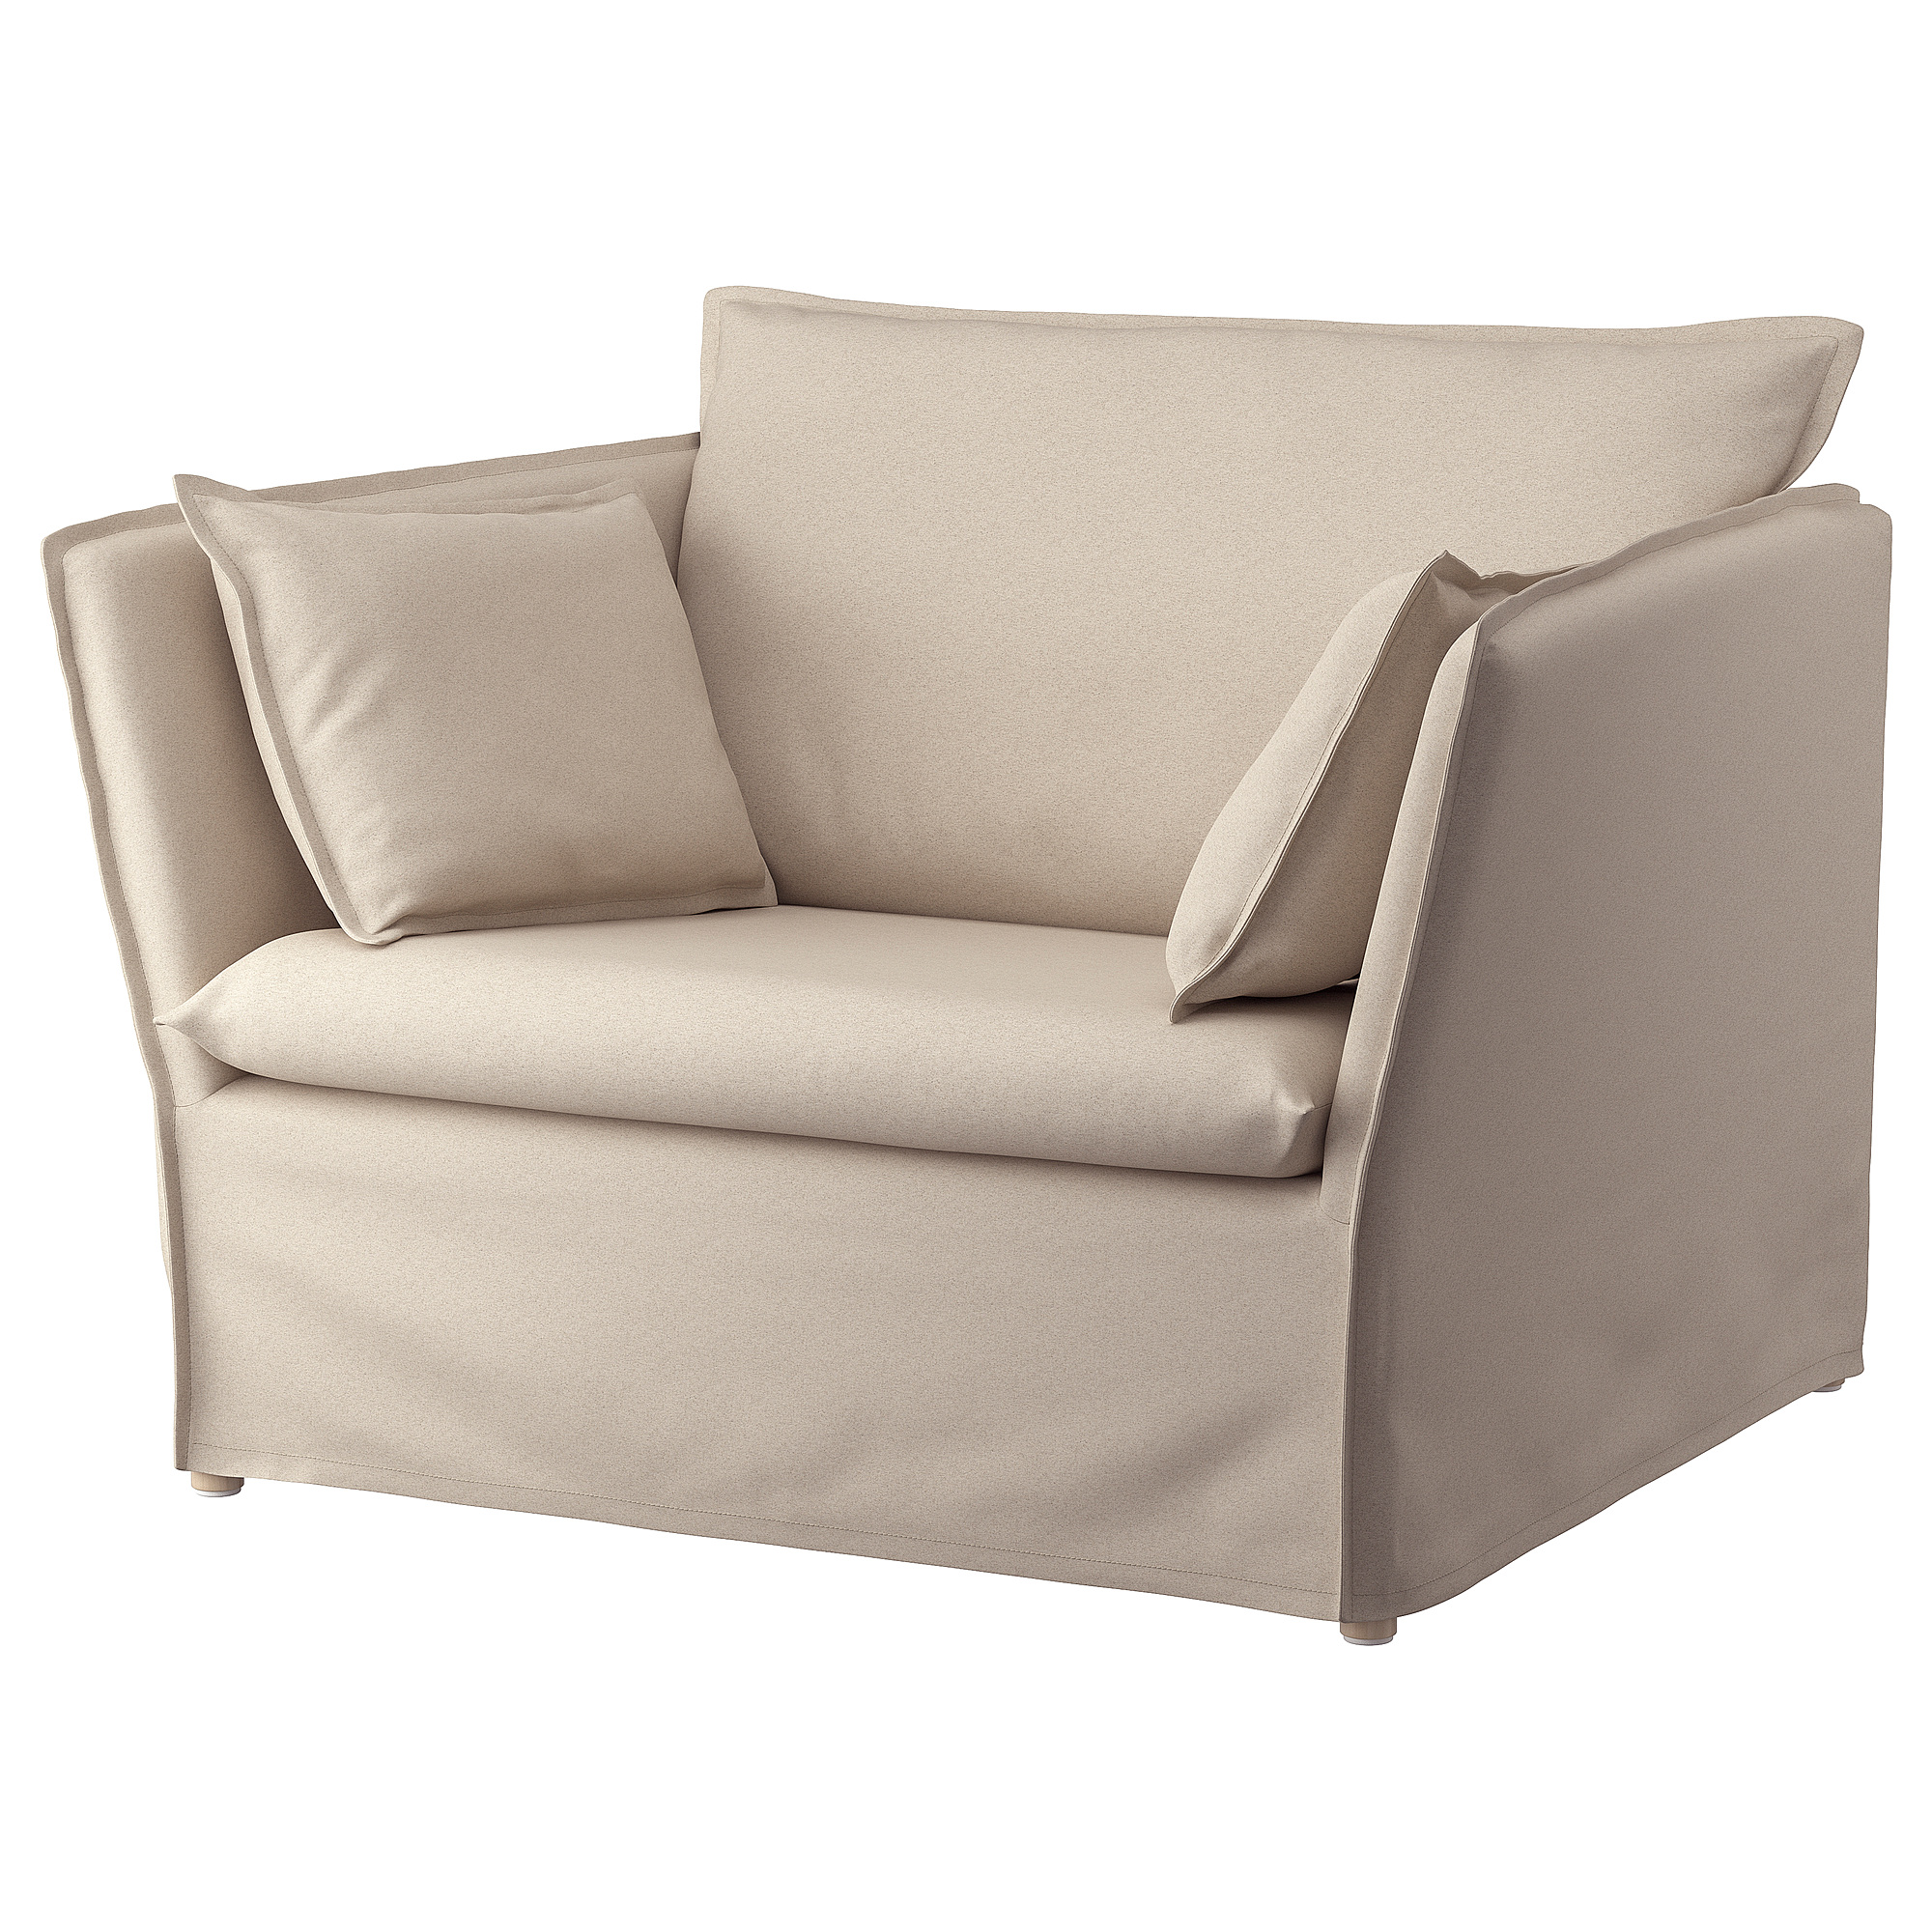 BACKSÄLEN 1,5-seat armchair